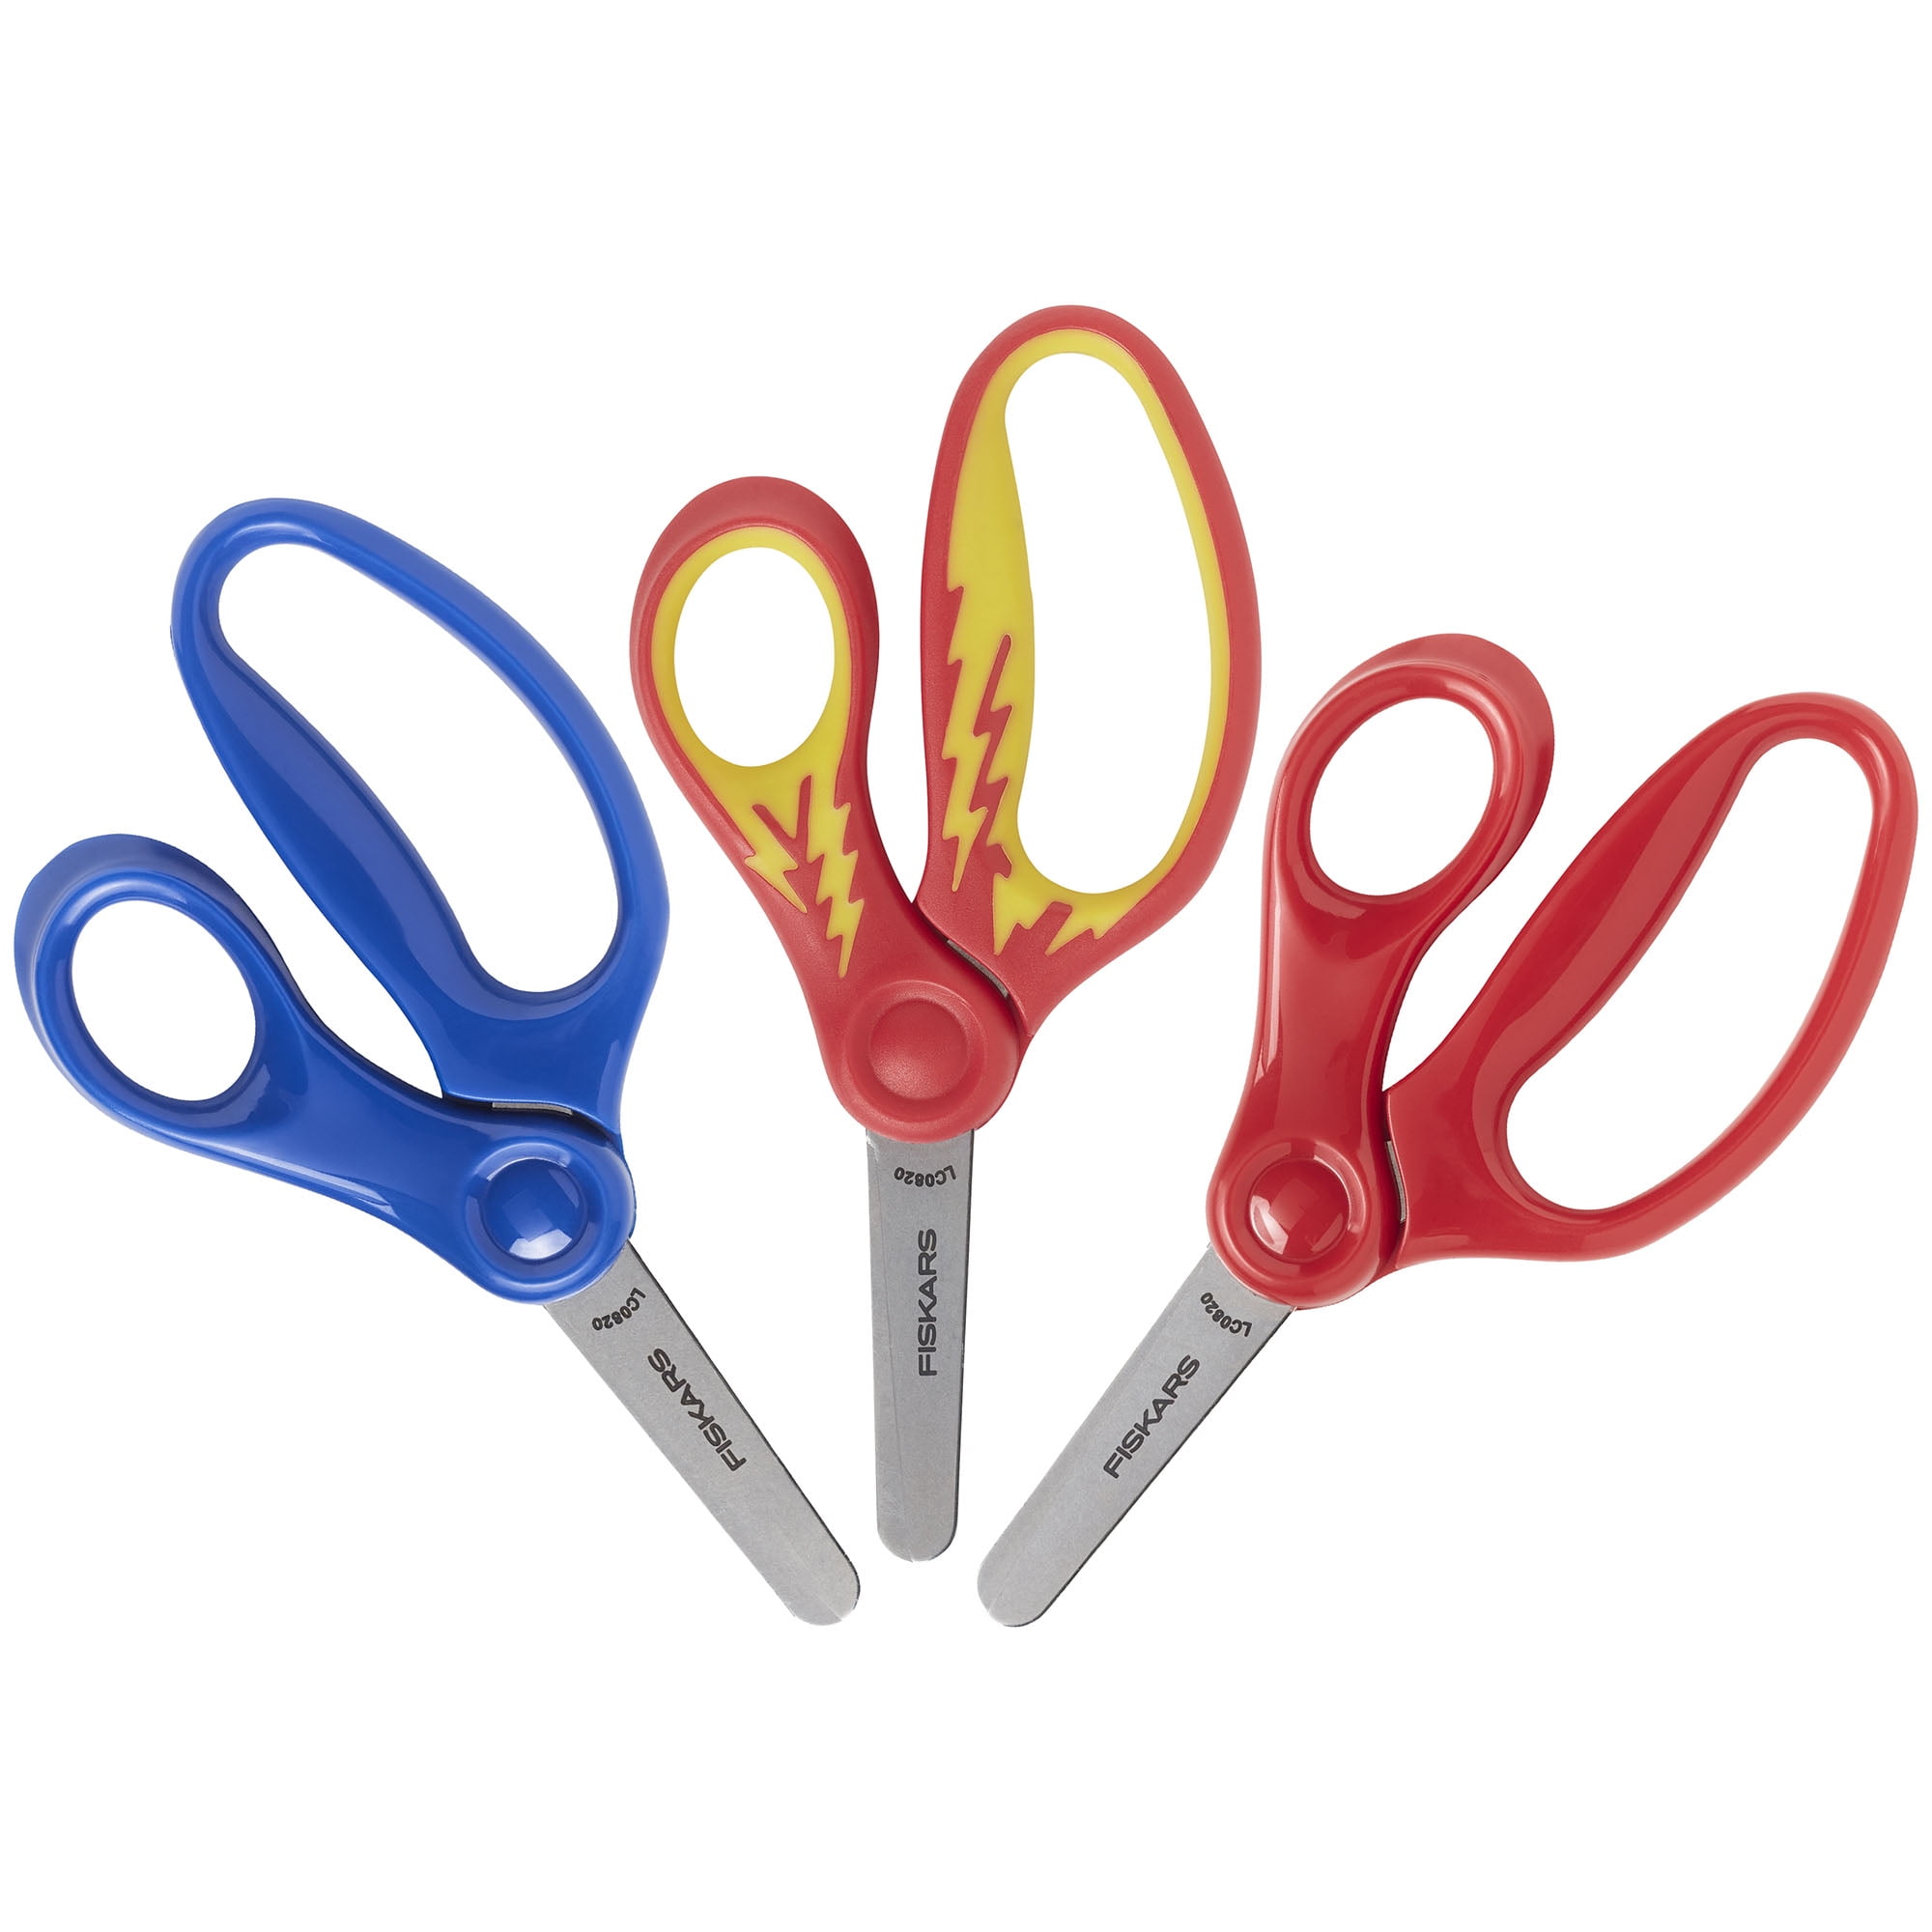 Fiskars® Kids' Scissors, 1 ct - Kroger